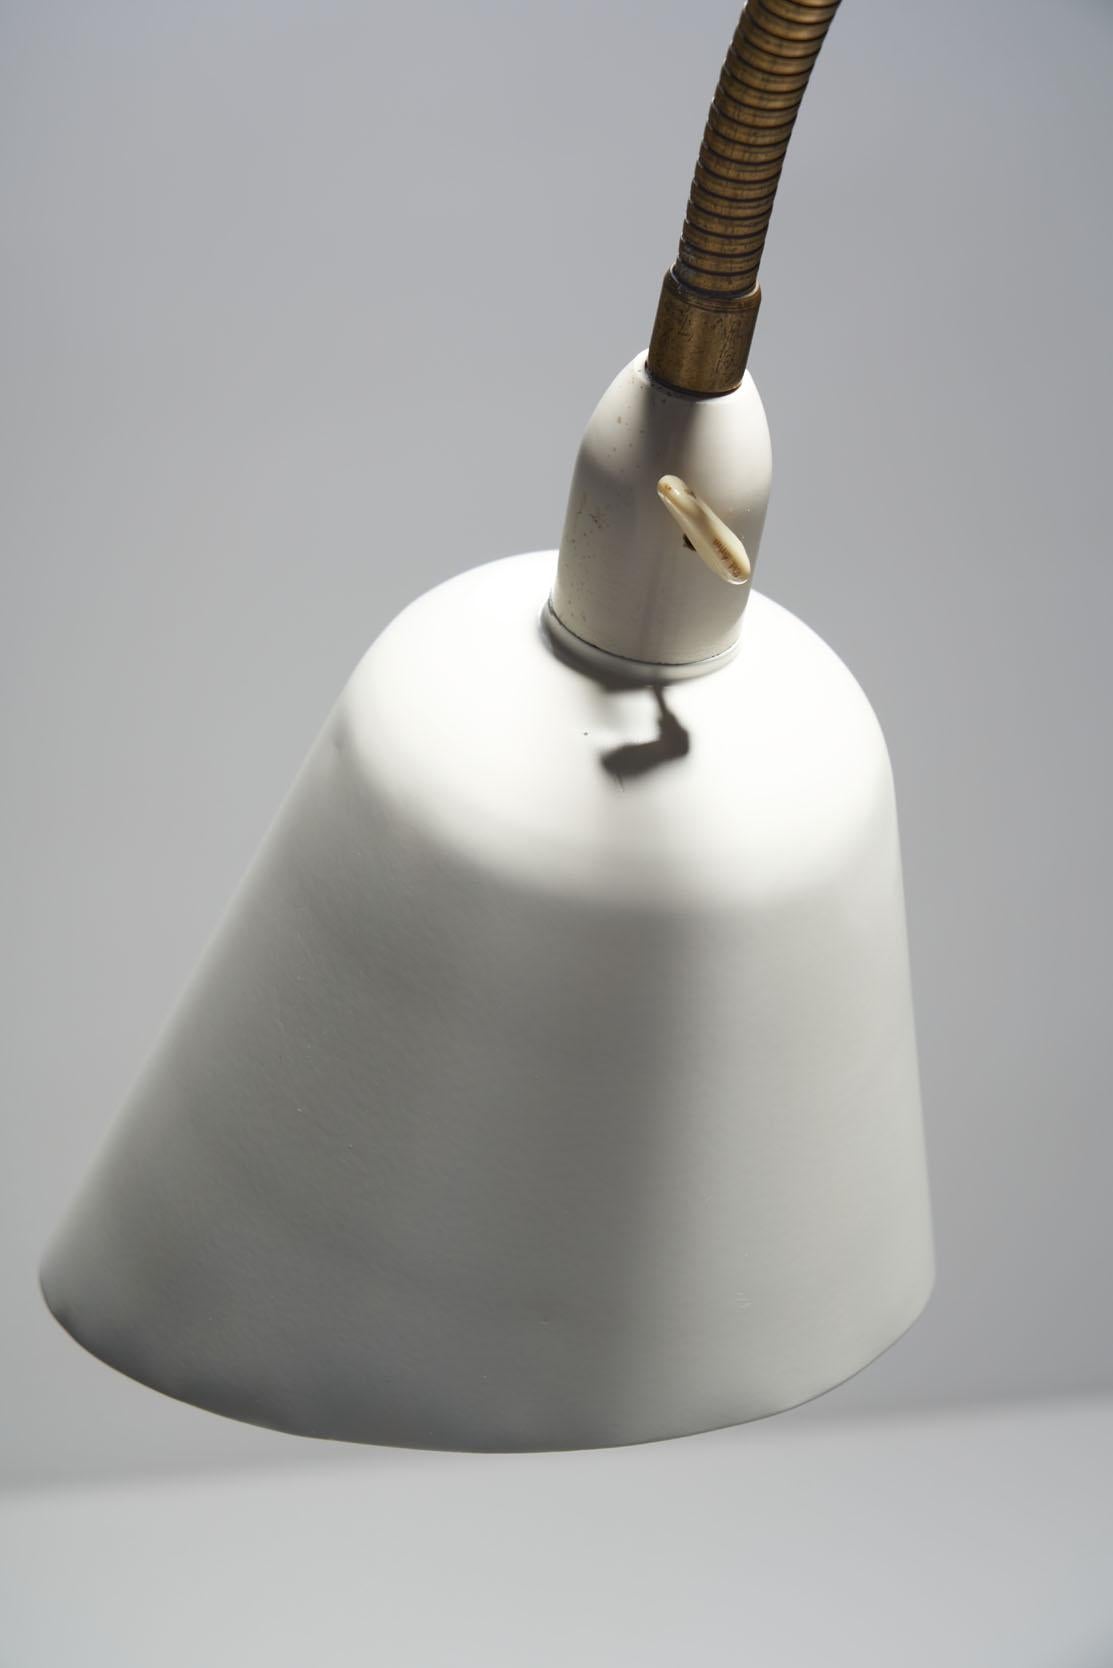 Lacquered Arne Jacobsen “Bellevue AJ7” Brass Floor Lamp, Denmark, 1929